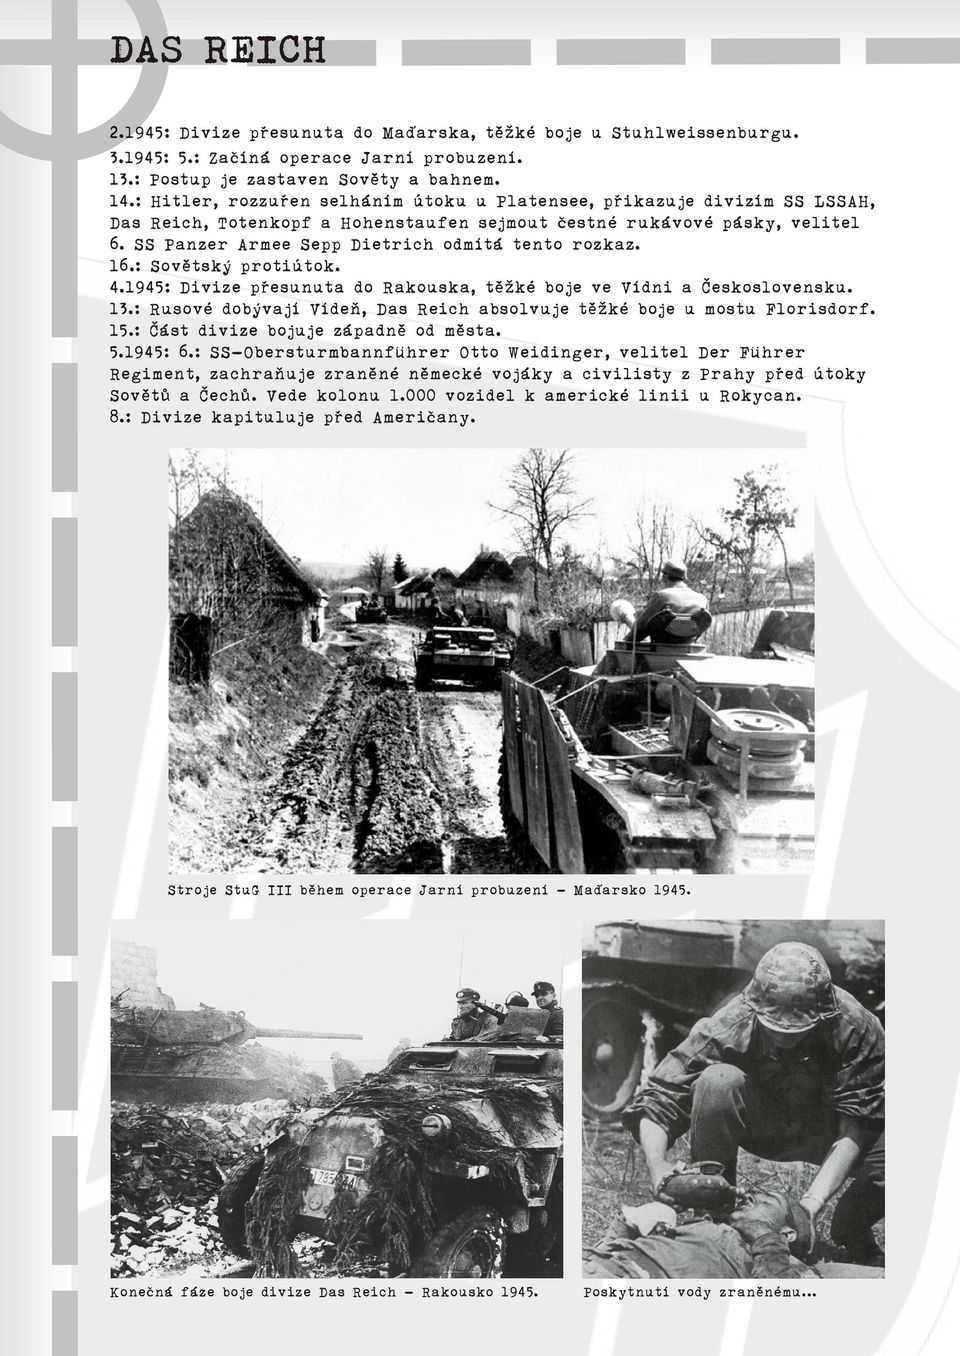 SS Panzer Armee Sepp Dietrich odmítá tento rozkaz. 16.: Sovìtský protiútok. 4.1945: Divize pøesunuta do Rakouska, tìžké boje ve Vídni a Èeskoslovensku. 13.